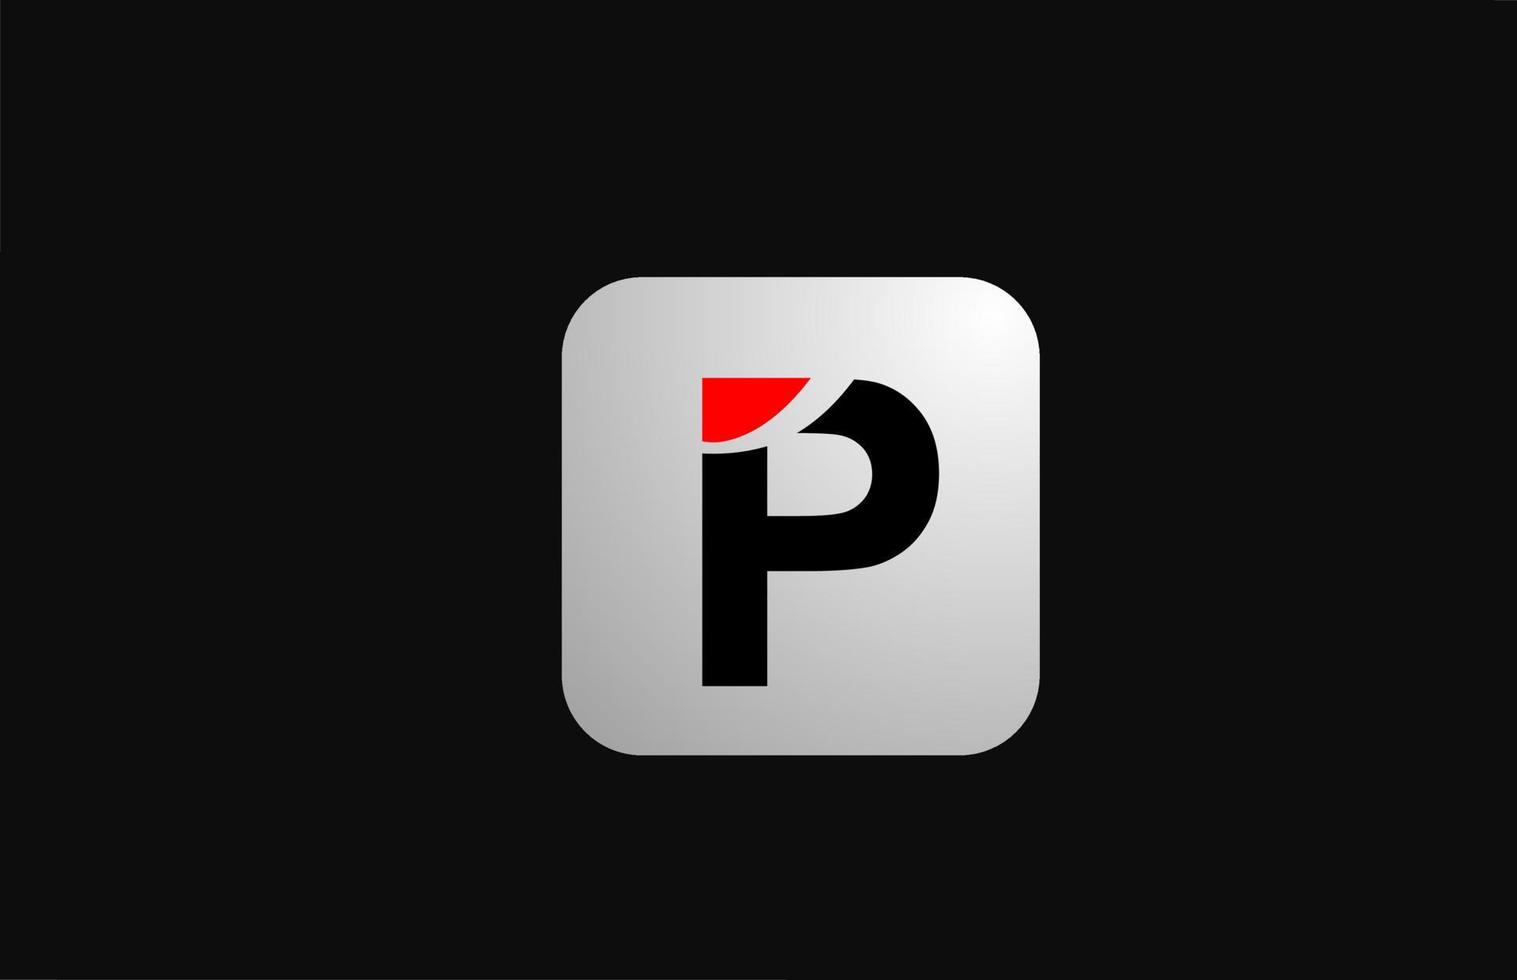 Ícone do logotipo da letra do alfabeto p para negócios e empresas com design simples em preto e branco vetor